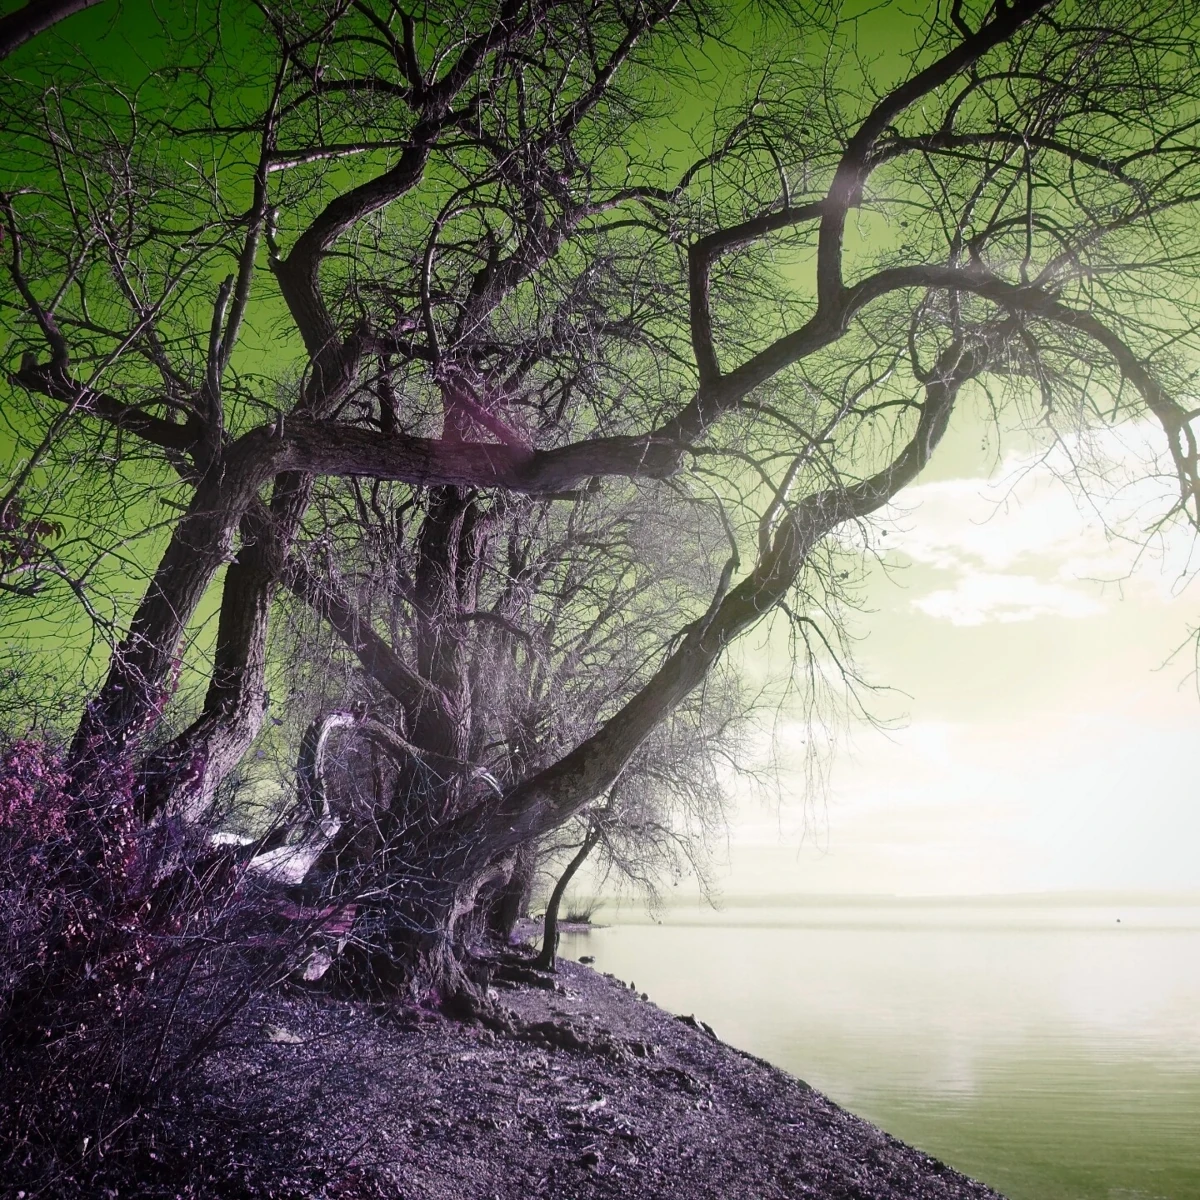 Quelques arbres dénudés, aux branches sinueuses, sur les berges rocailleuses d'un lac à l'eau calme. Les couleurs de la photo sont modifiées - le ciel est teinté de vert lime, et la lumière ambiante donne une lueur mauve à la végétation.